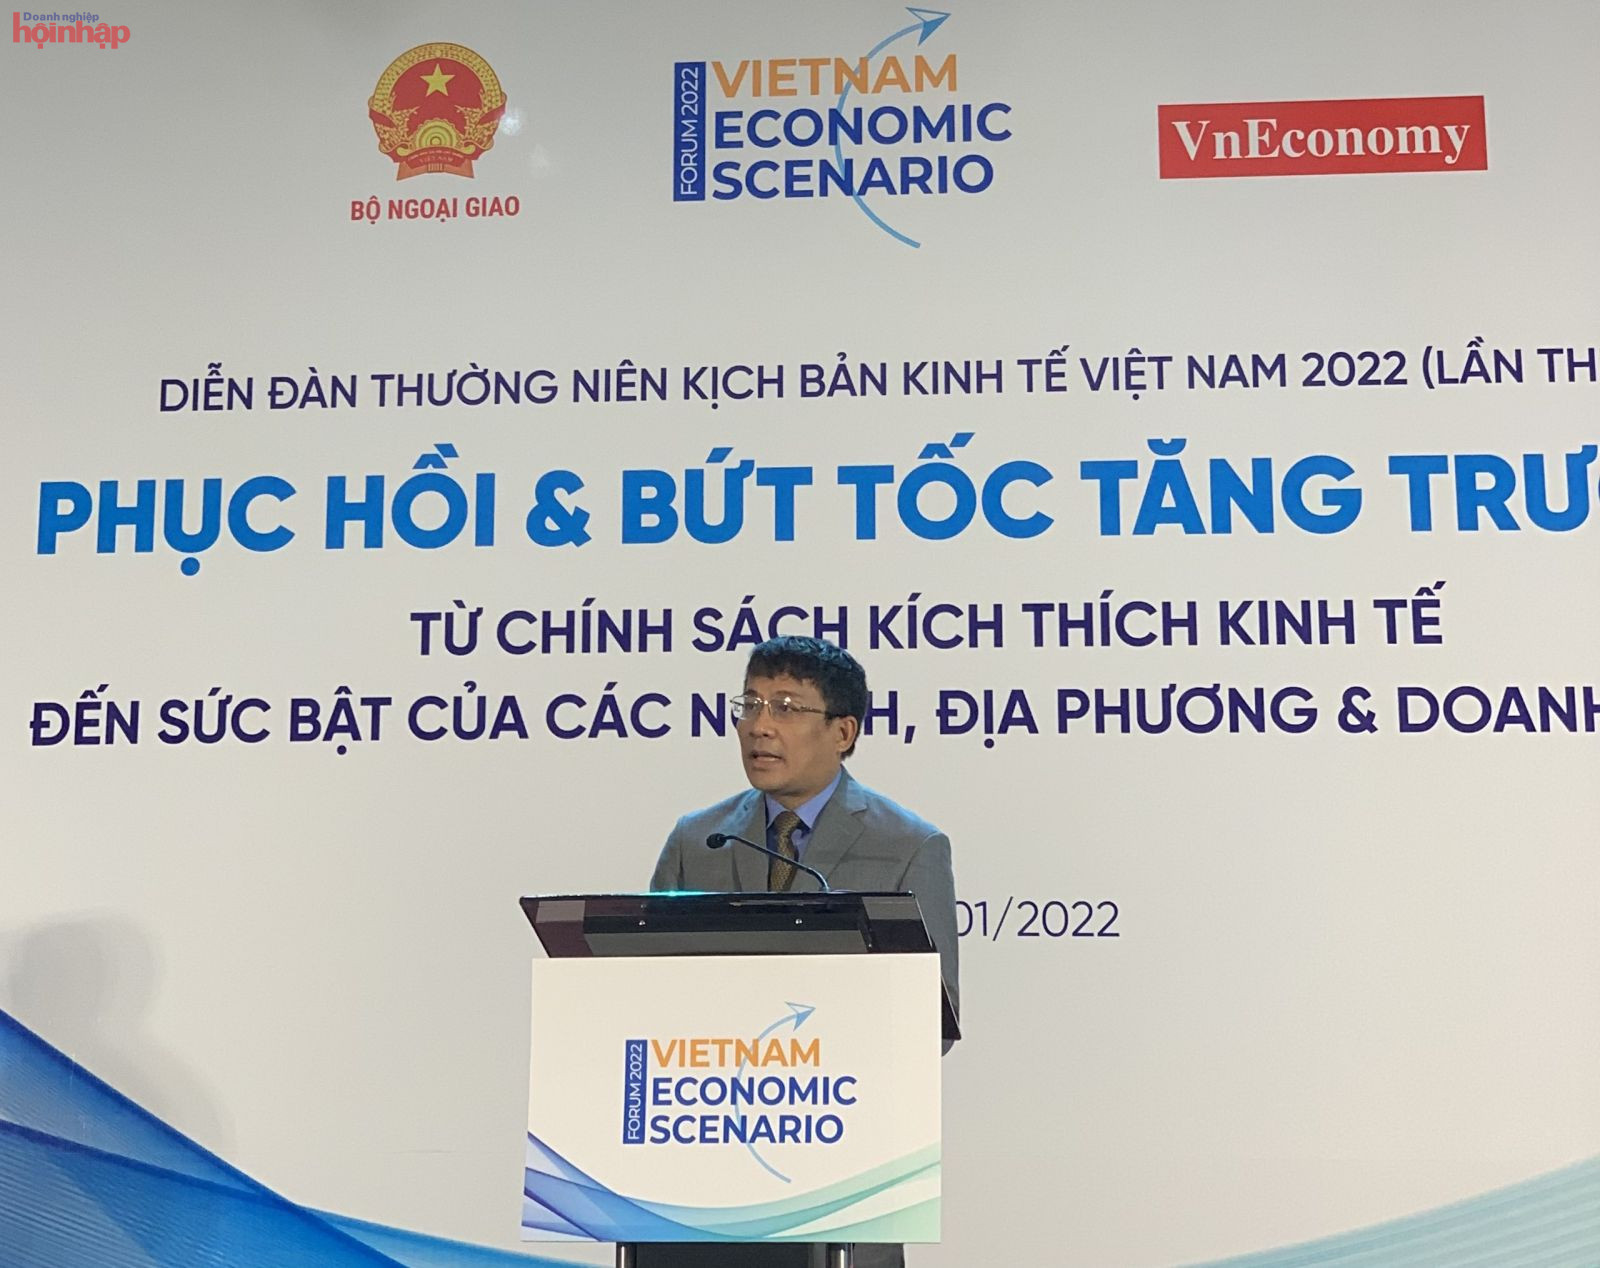 Thứ trưởng Bộ Ngoại giao Nguyễn Minh Vũ phát biểu khai mạc